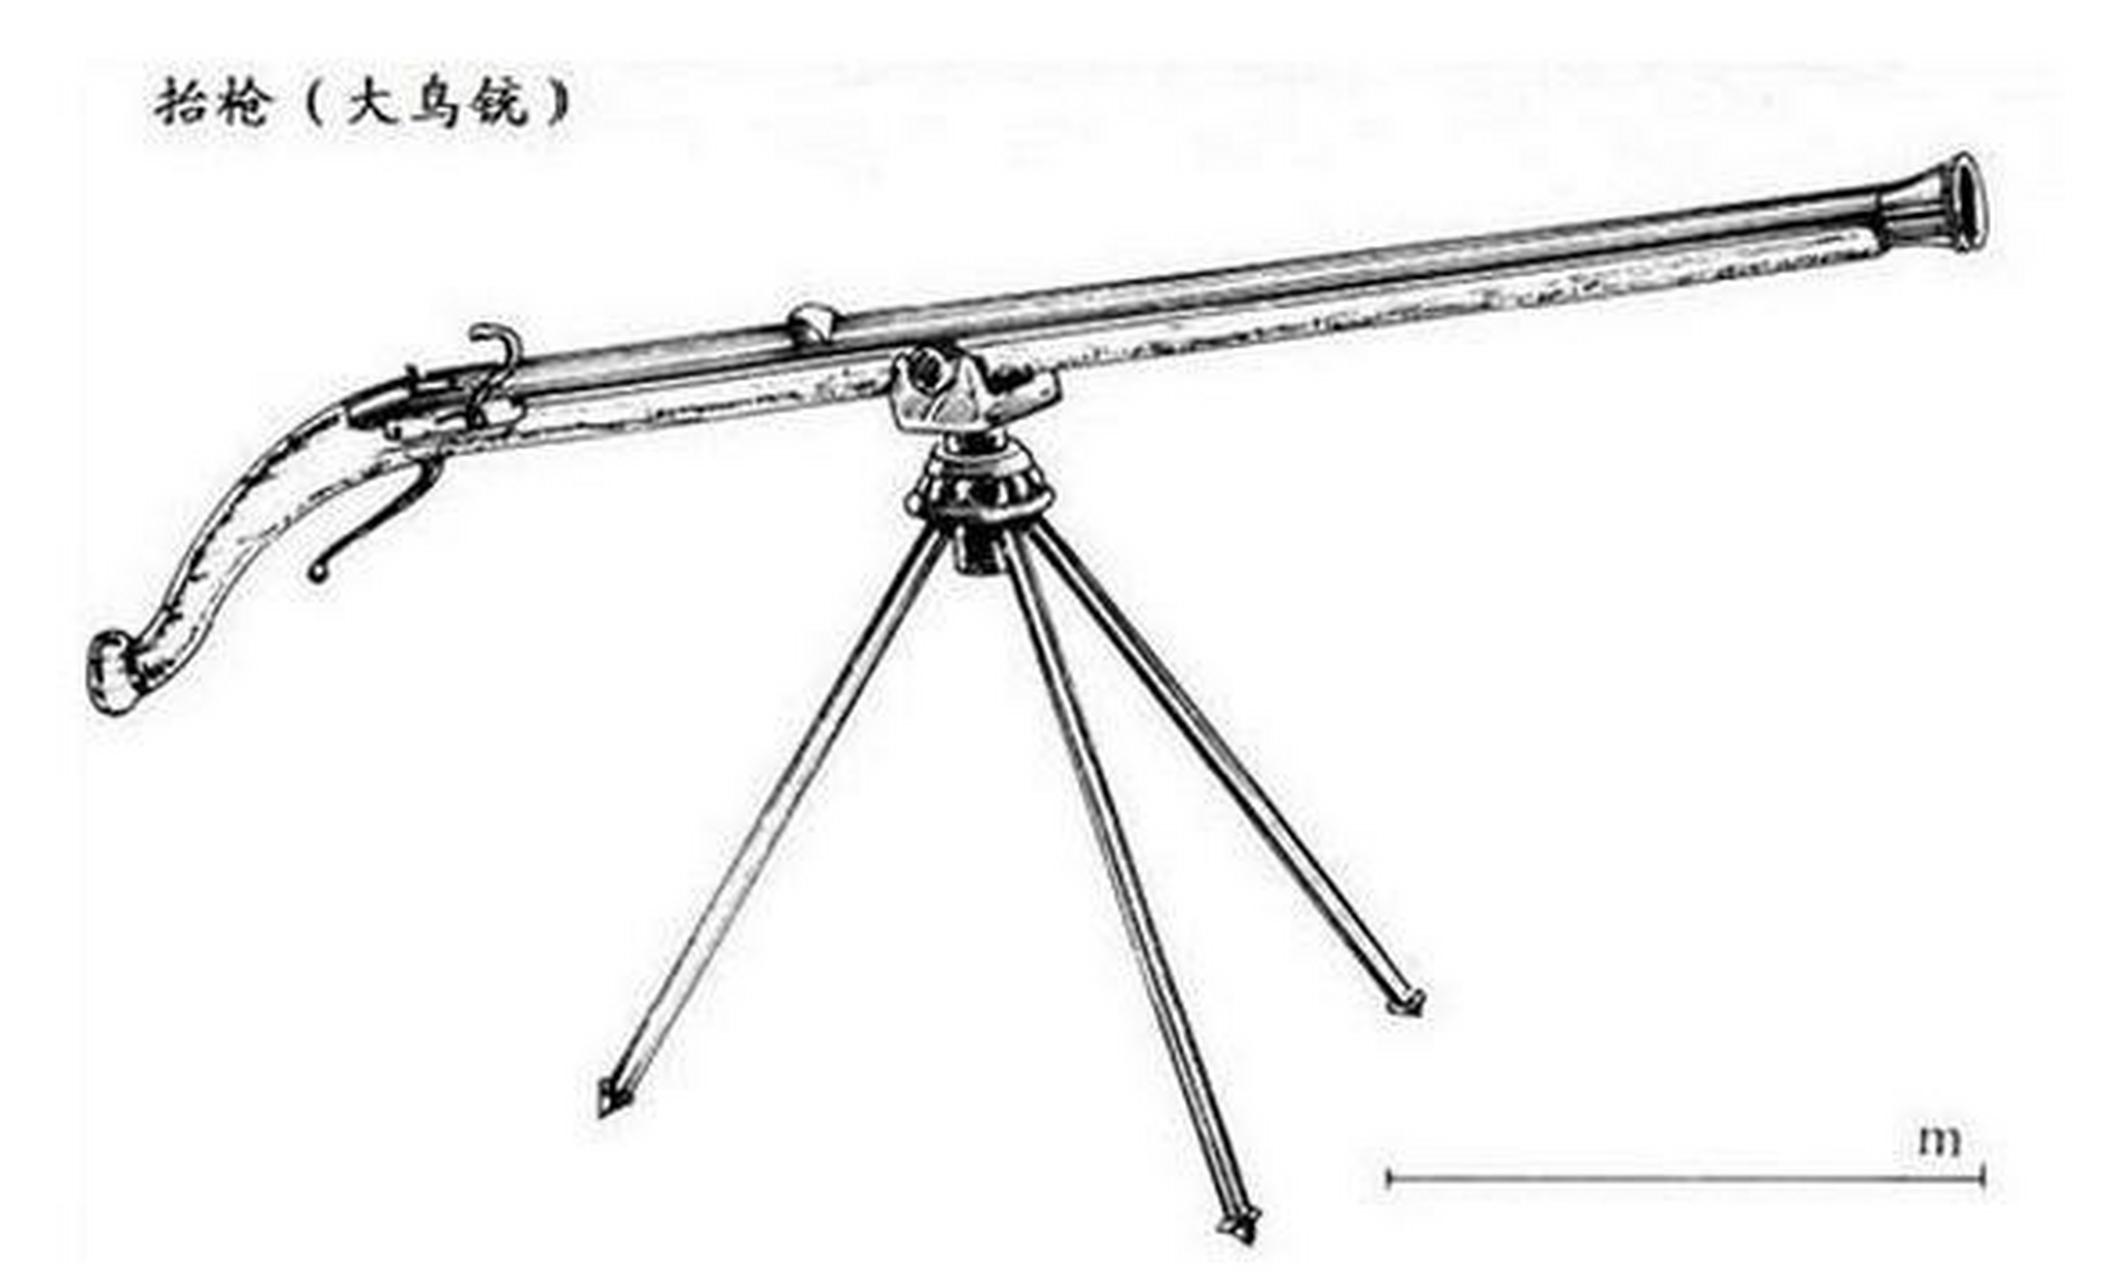 明代火器·抬枪  大型鸟枪,带有三角支架和旋转装置,长3米,重12公斤